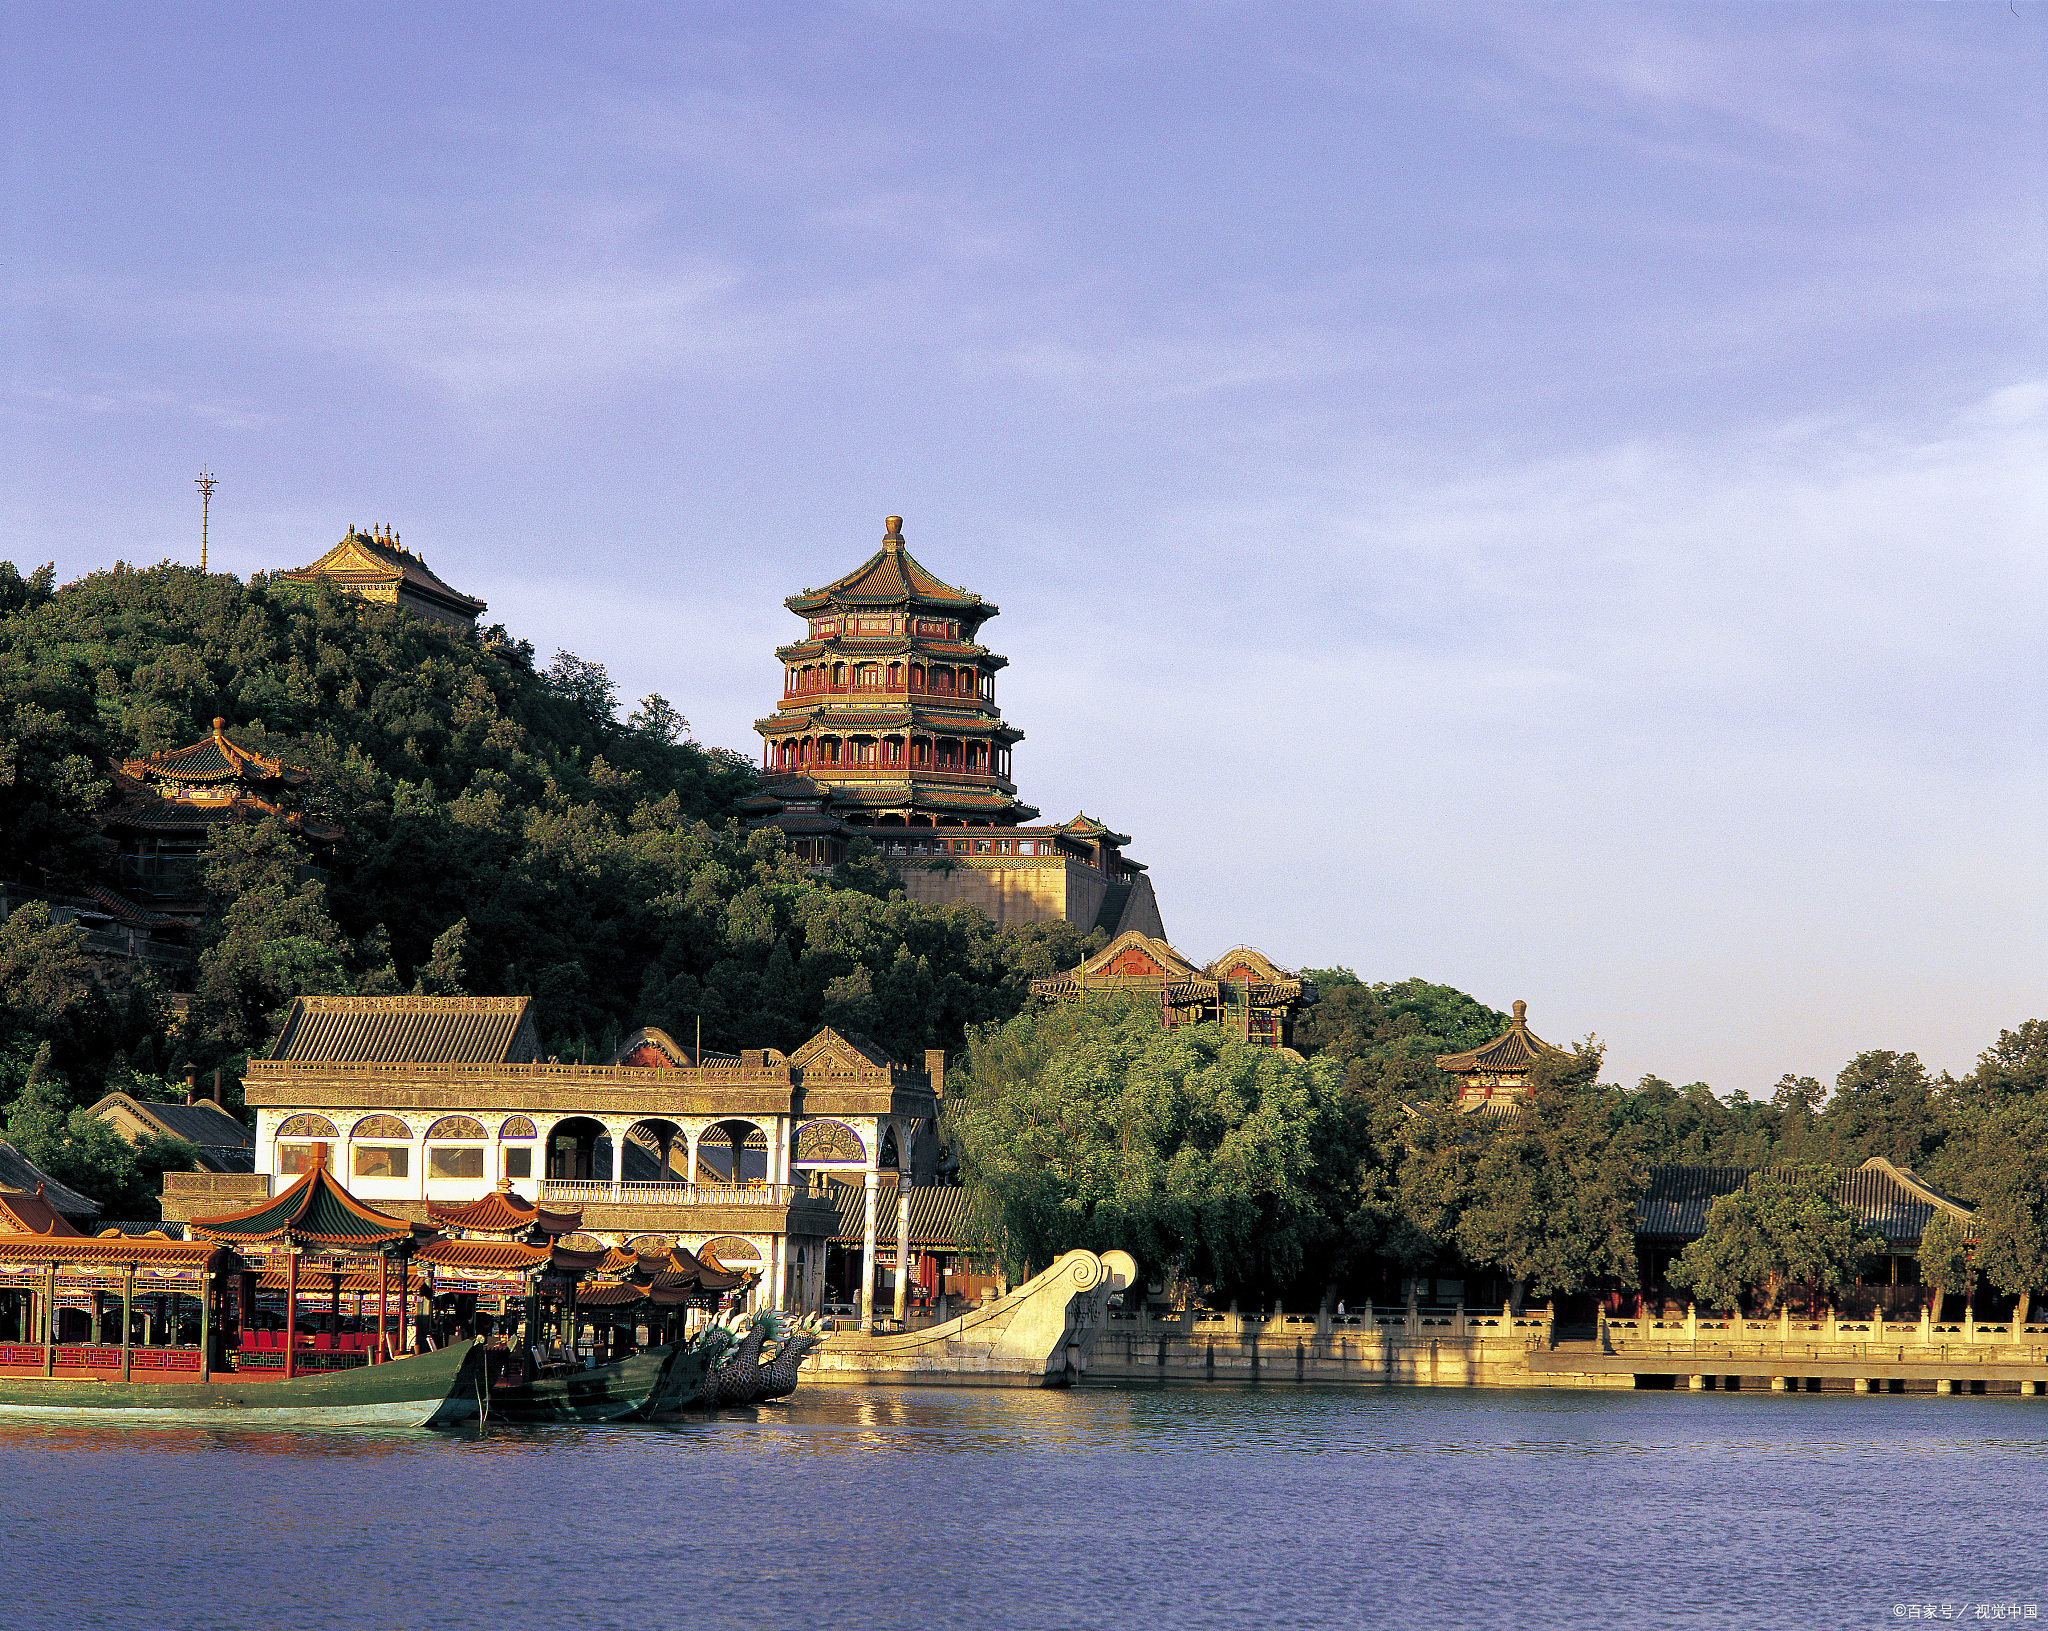 北京颐和园,中国清朝时期皇家园林,前身为清漪园,坐落在北京西郊,距